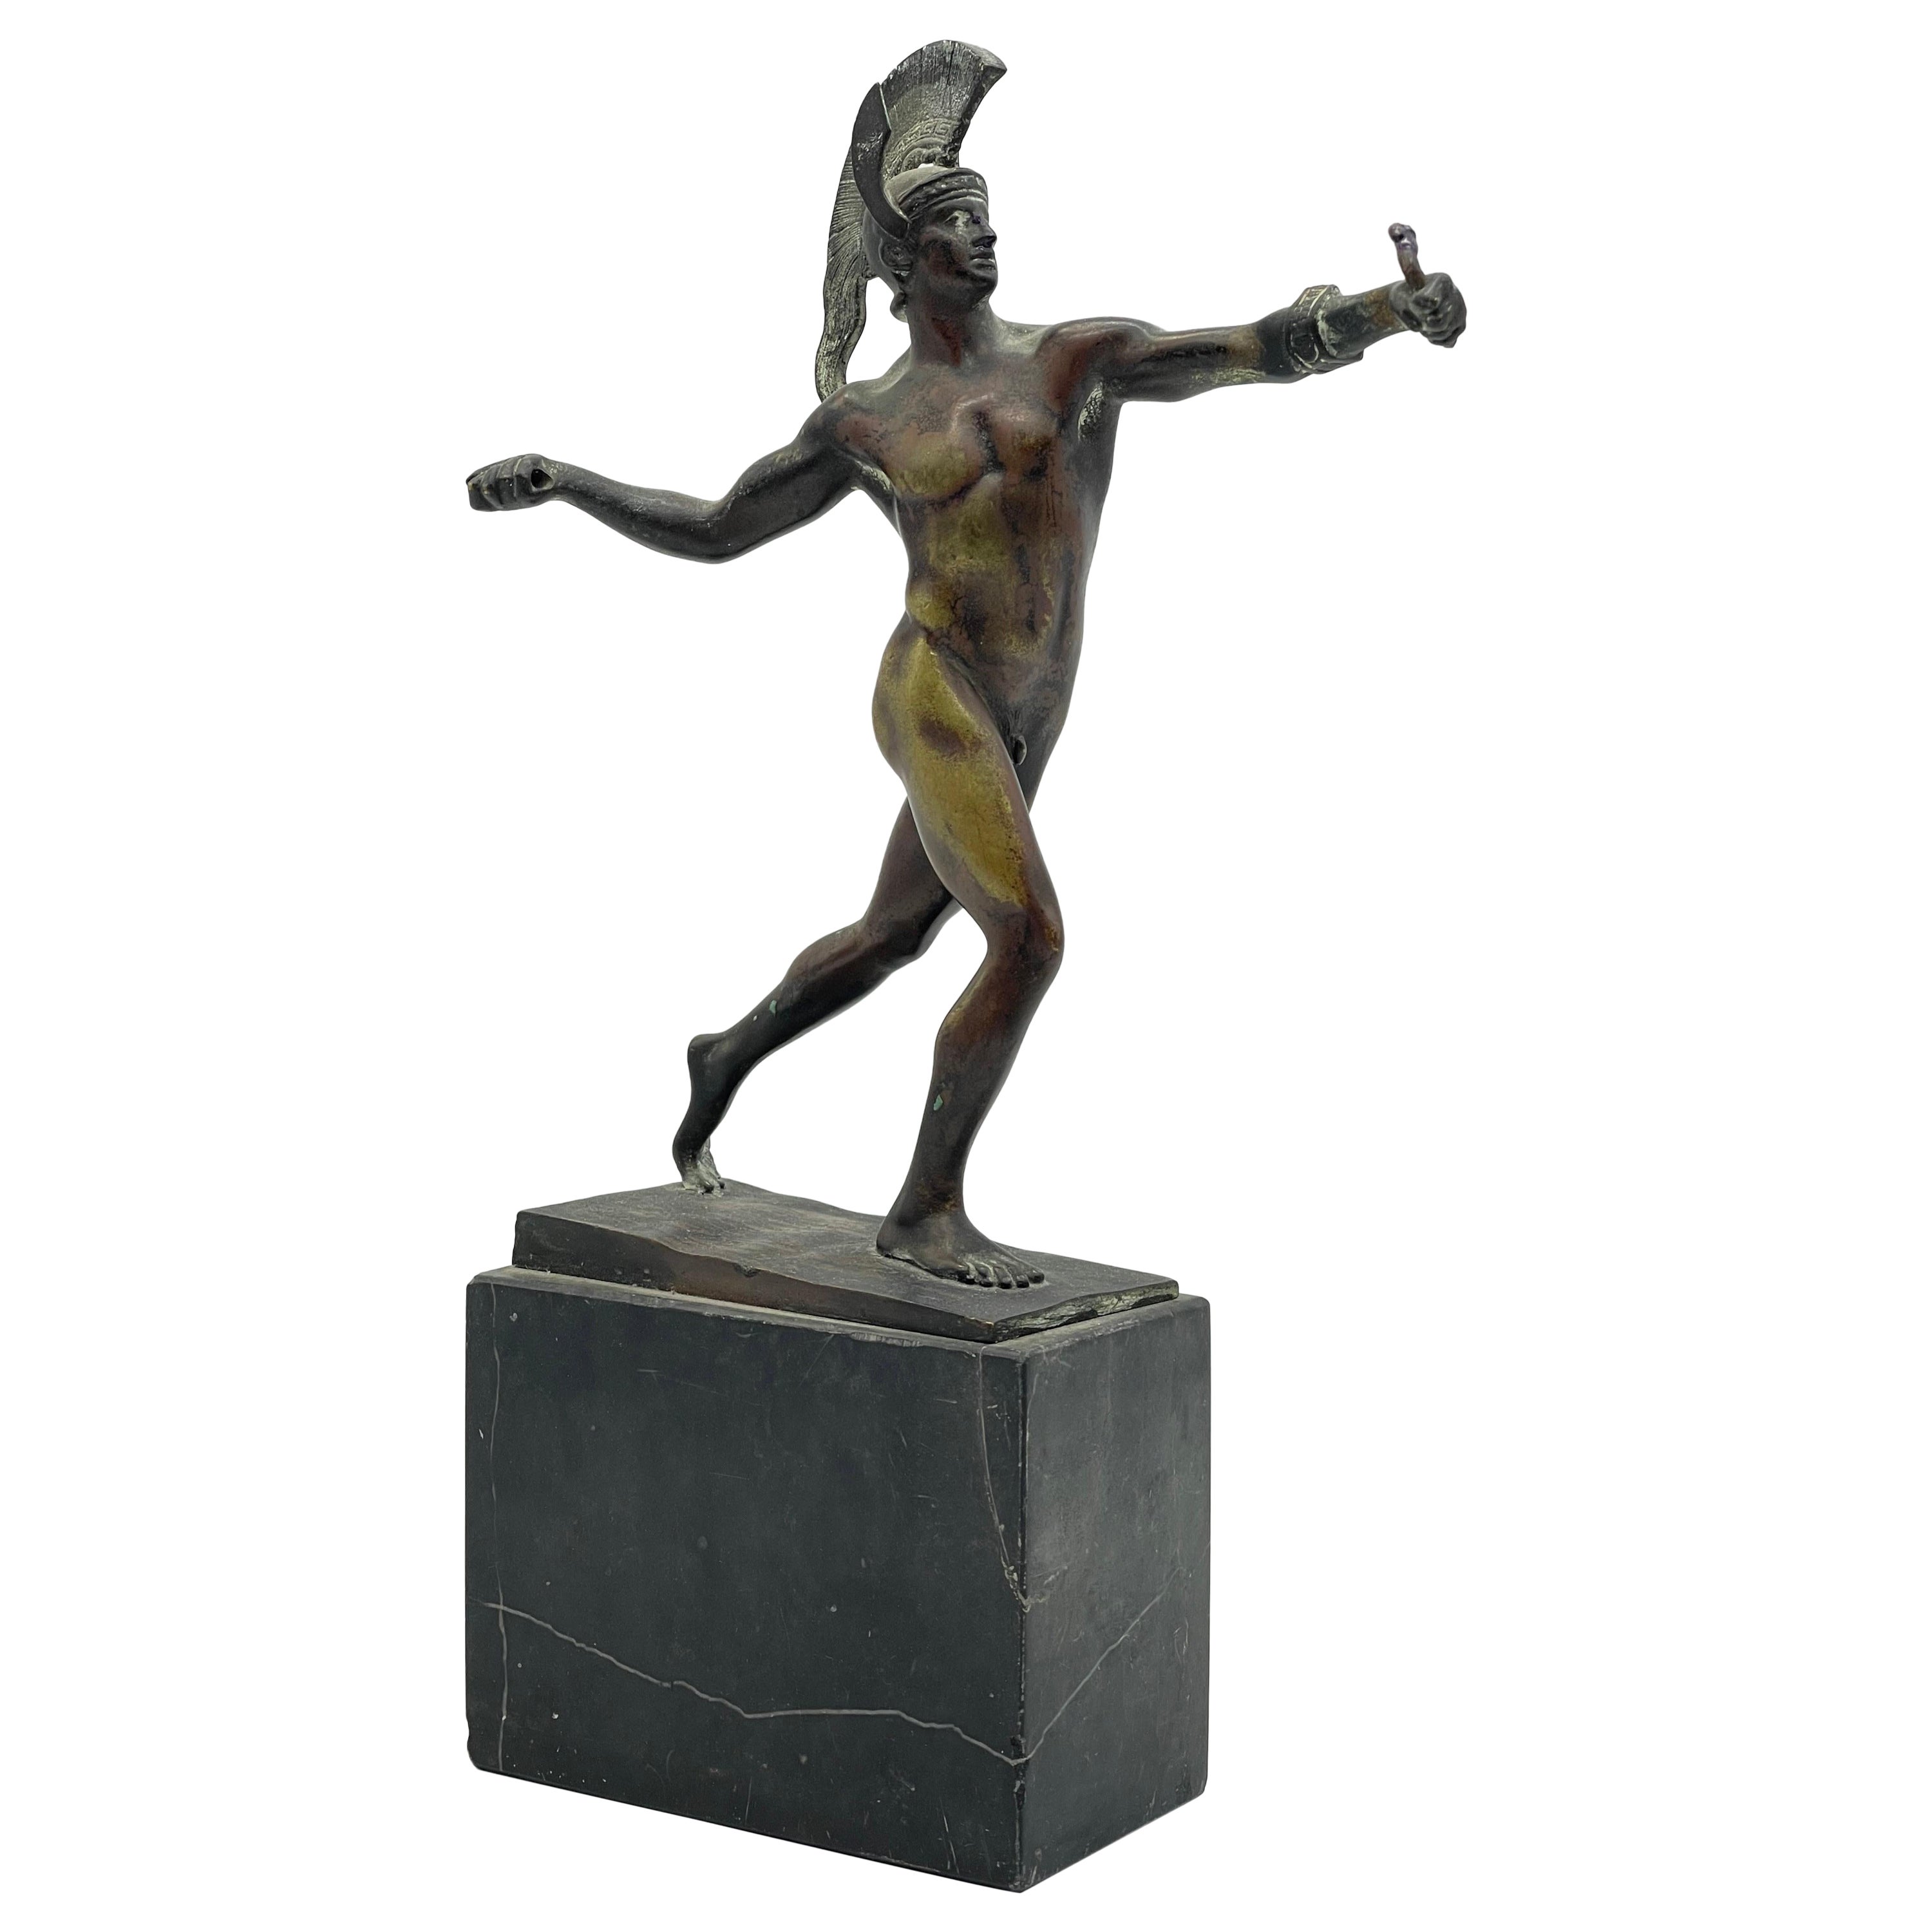 Antike athletische Bronzeskulptur eines Kriegers auf Marmorsockels, griechische Figur